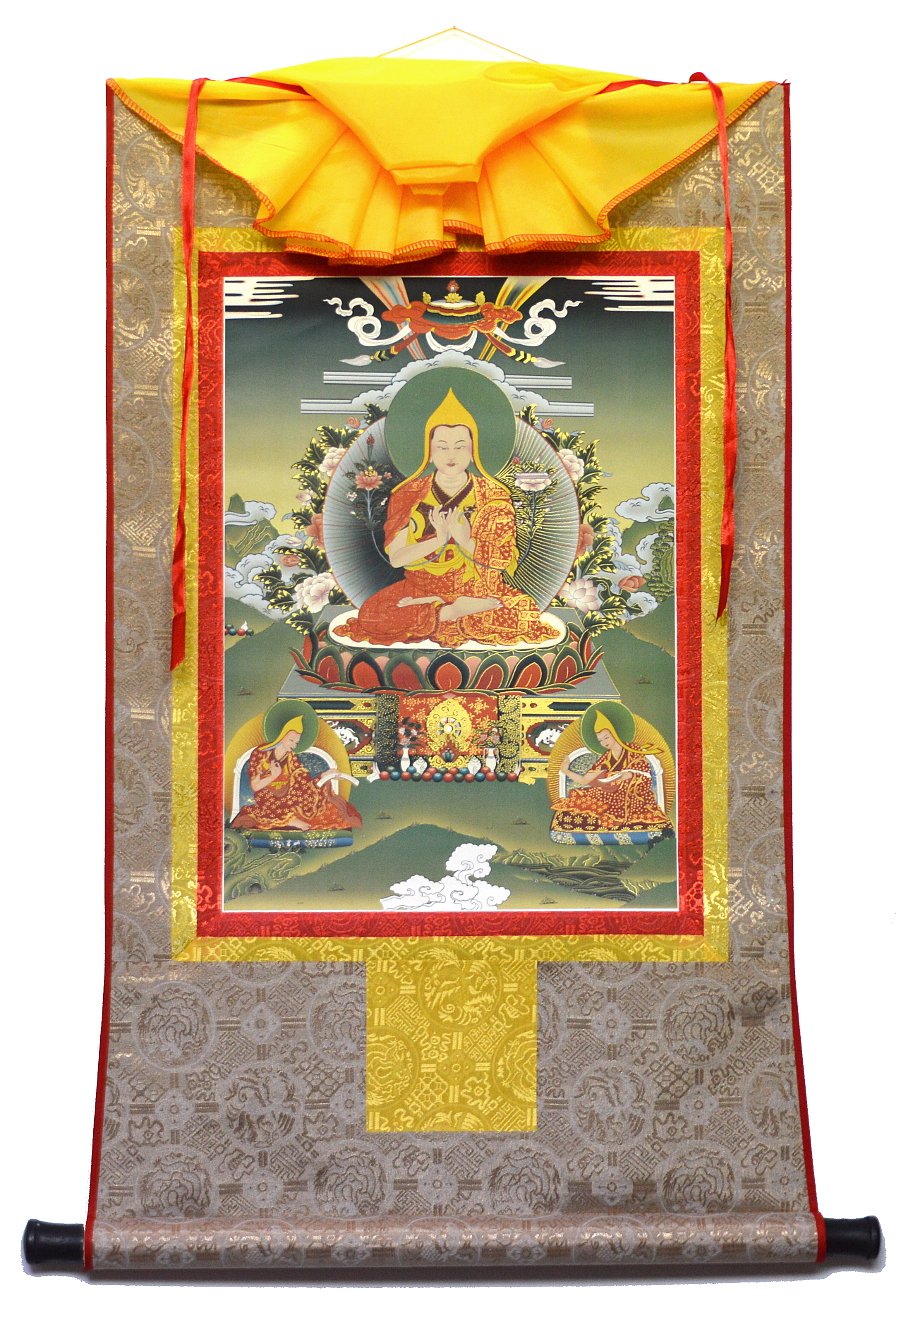 Тханка Лама Цонкапа с учениками (печатная, 51 х 83 см), 51 х 83 см, изображение: 32 х 44,5 см